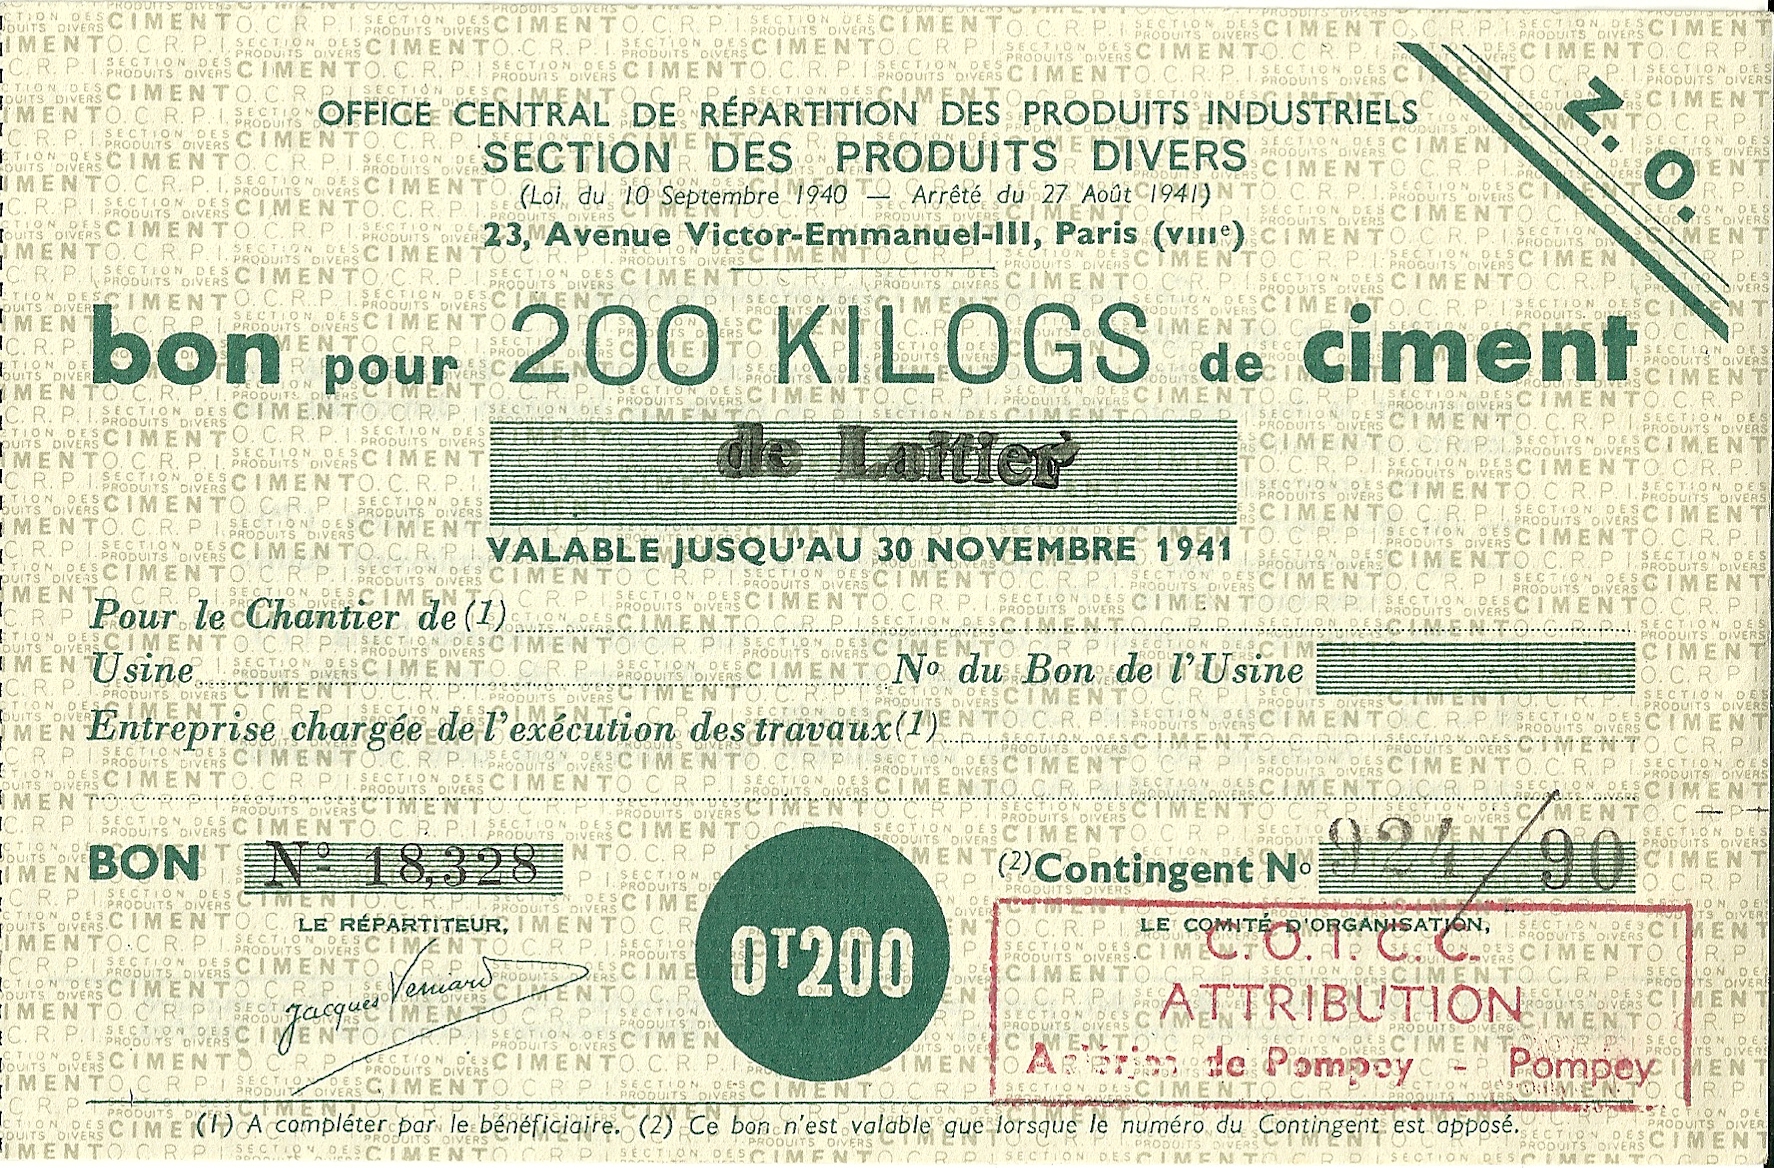 SECTION DES PRODUITS DIVERS - bon pour 200 KILOGS de ciment de Laitier - 18,328